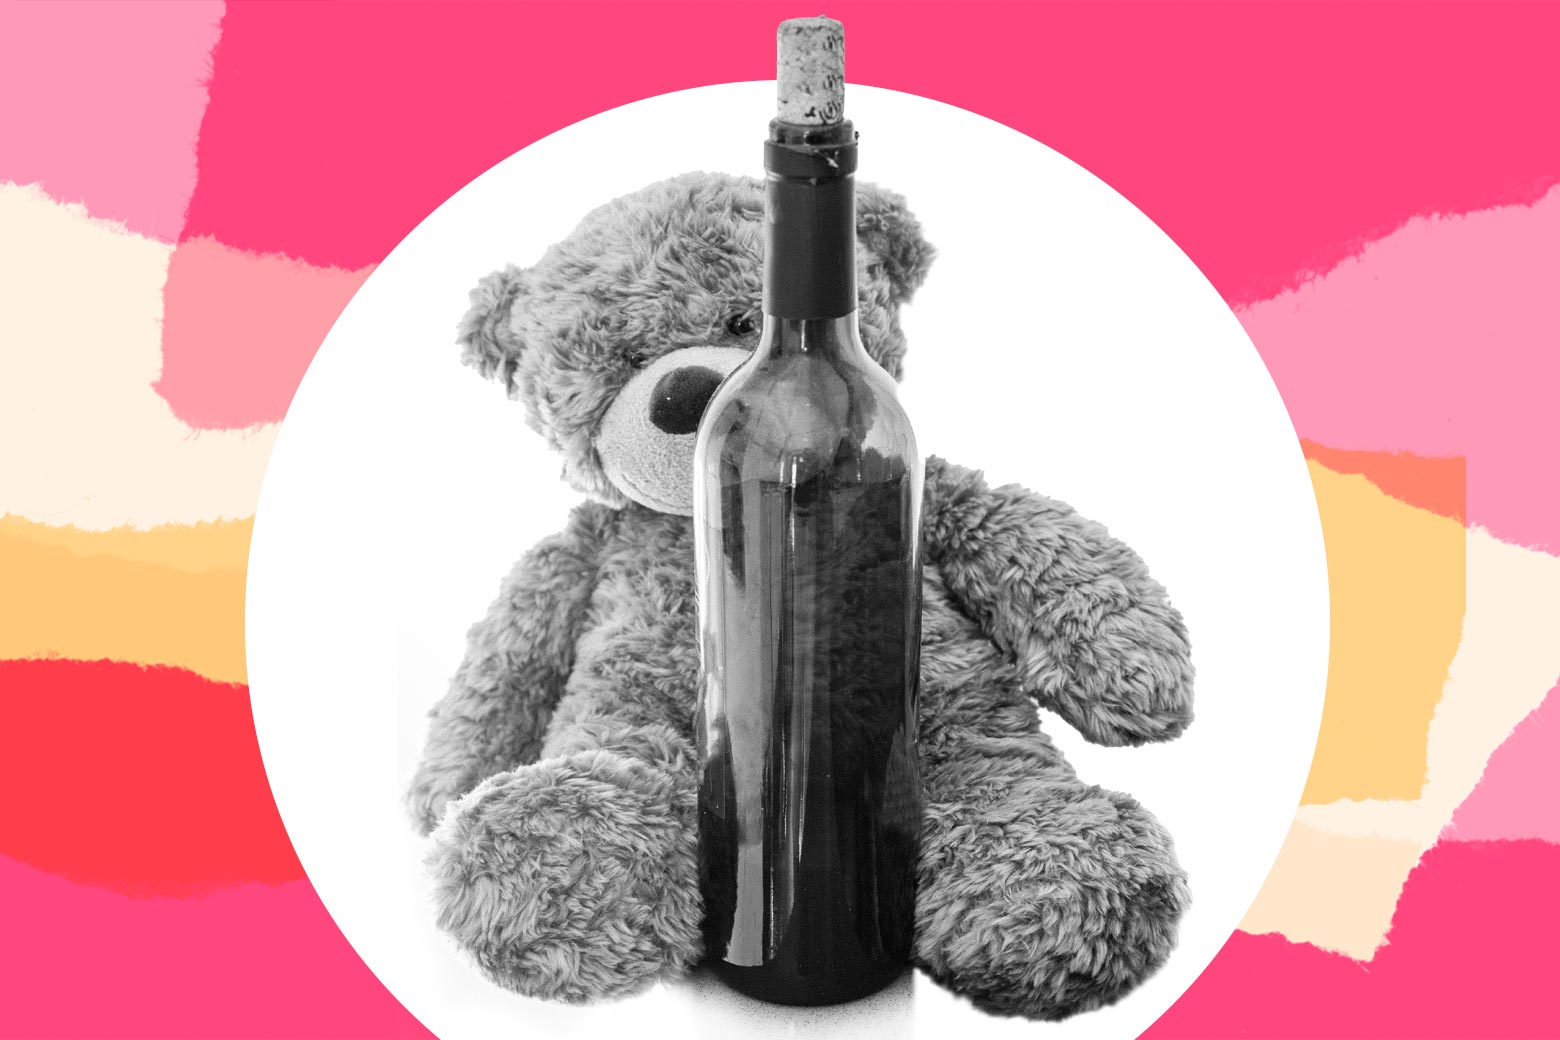 A teddy bear hugs a bottle of red wine.